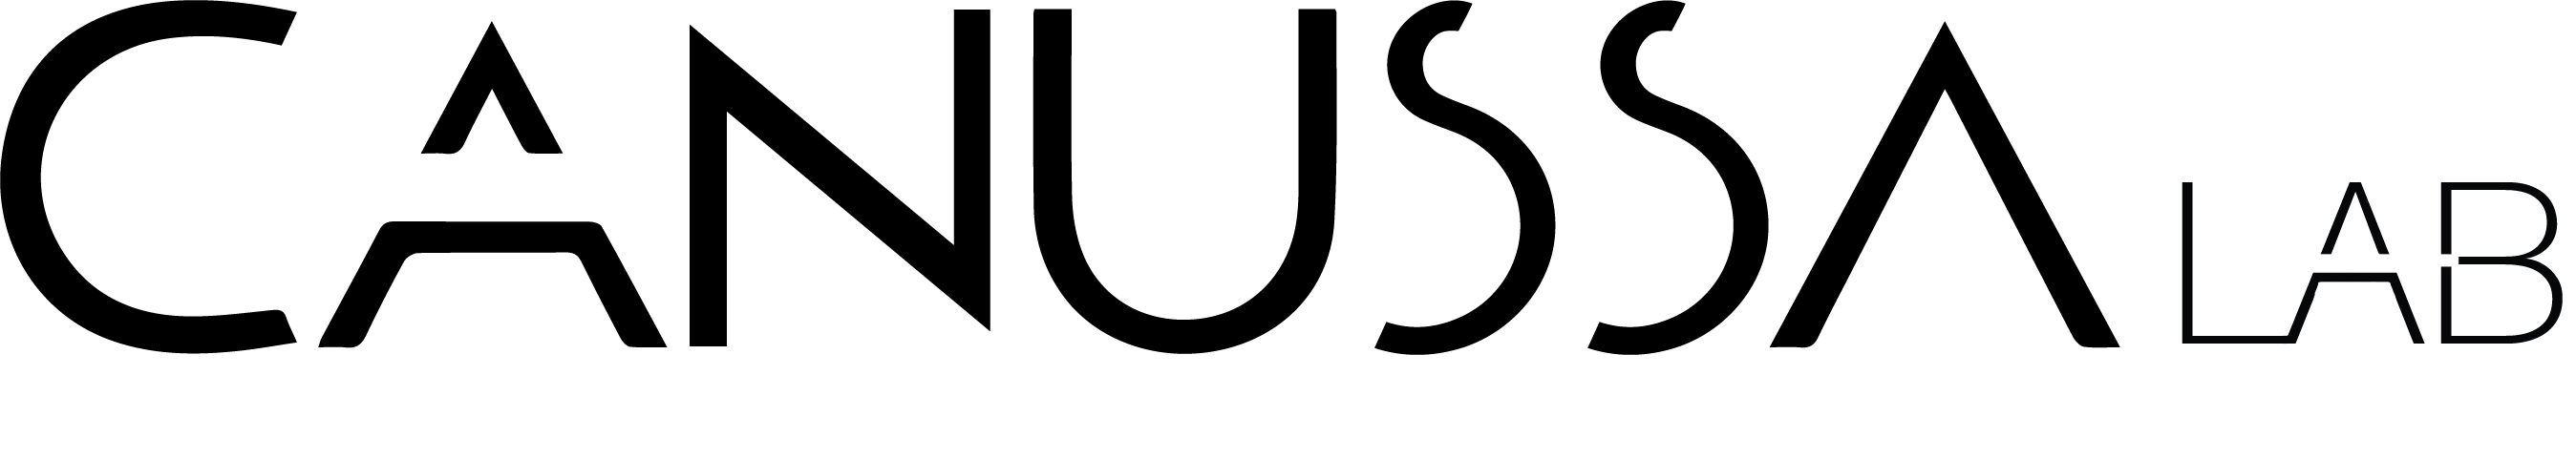 logo canussa lab